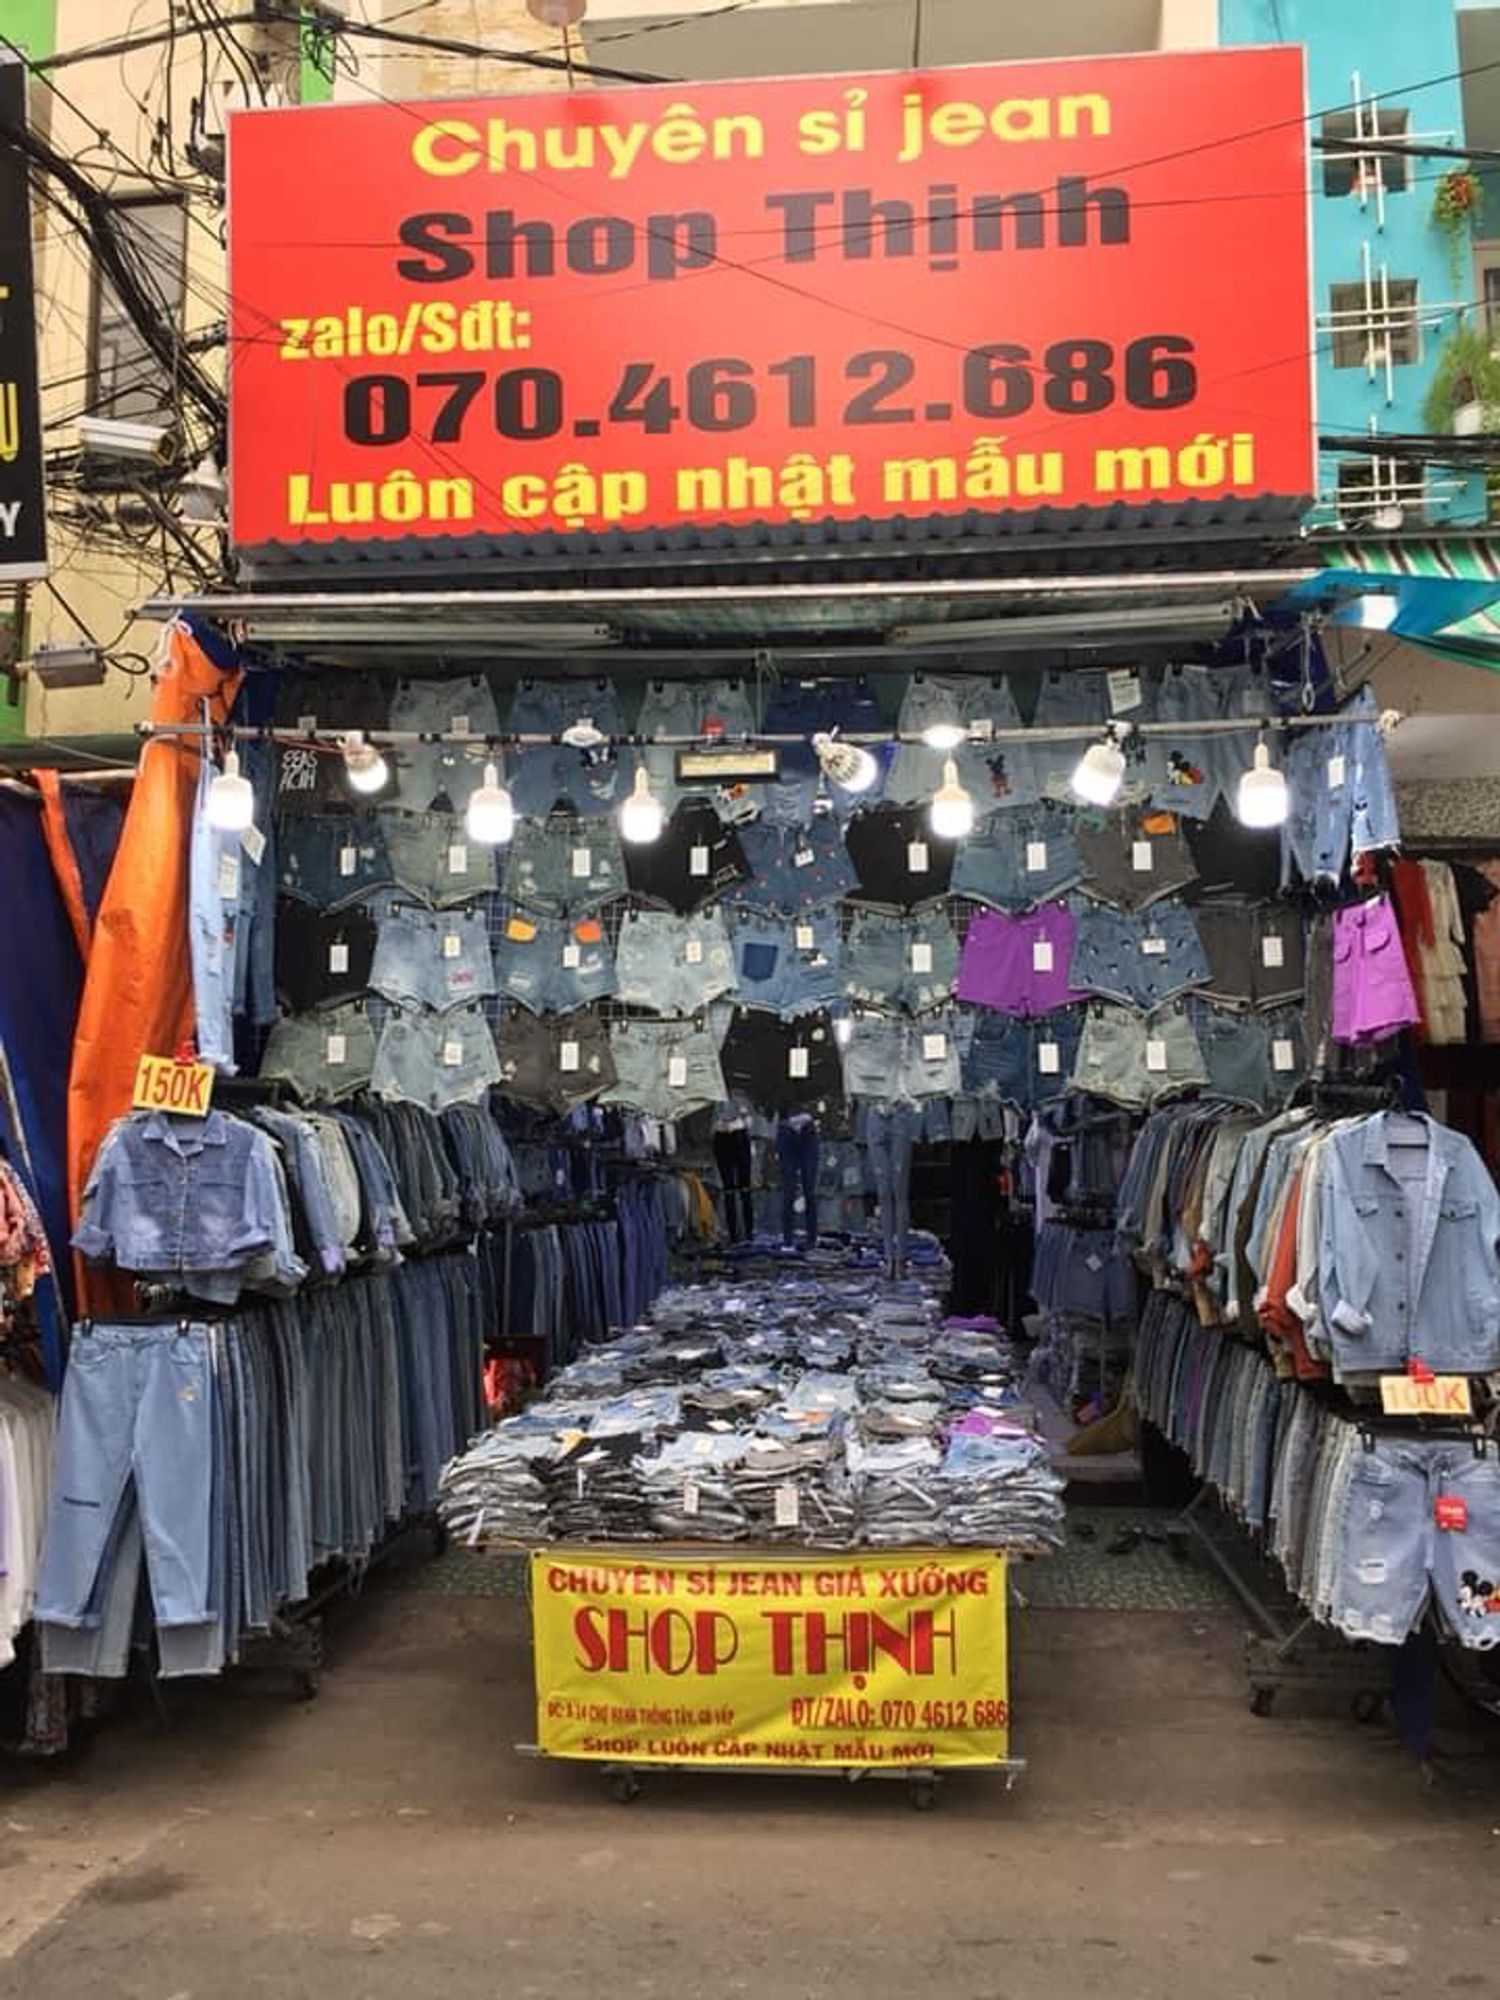 shop Thịnh